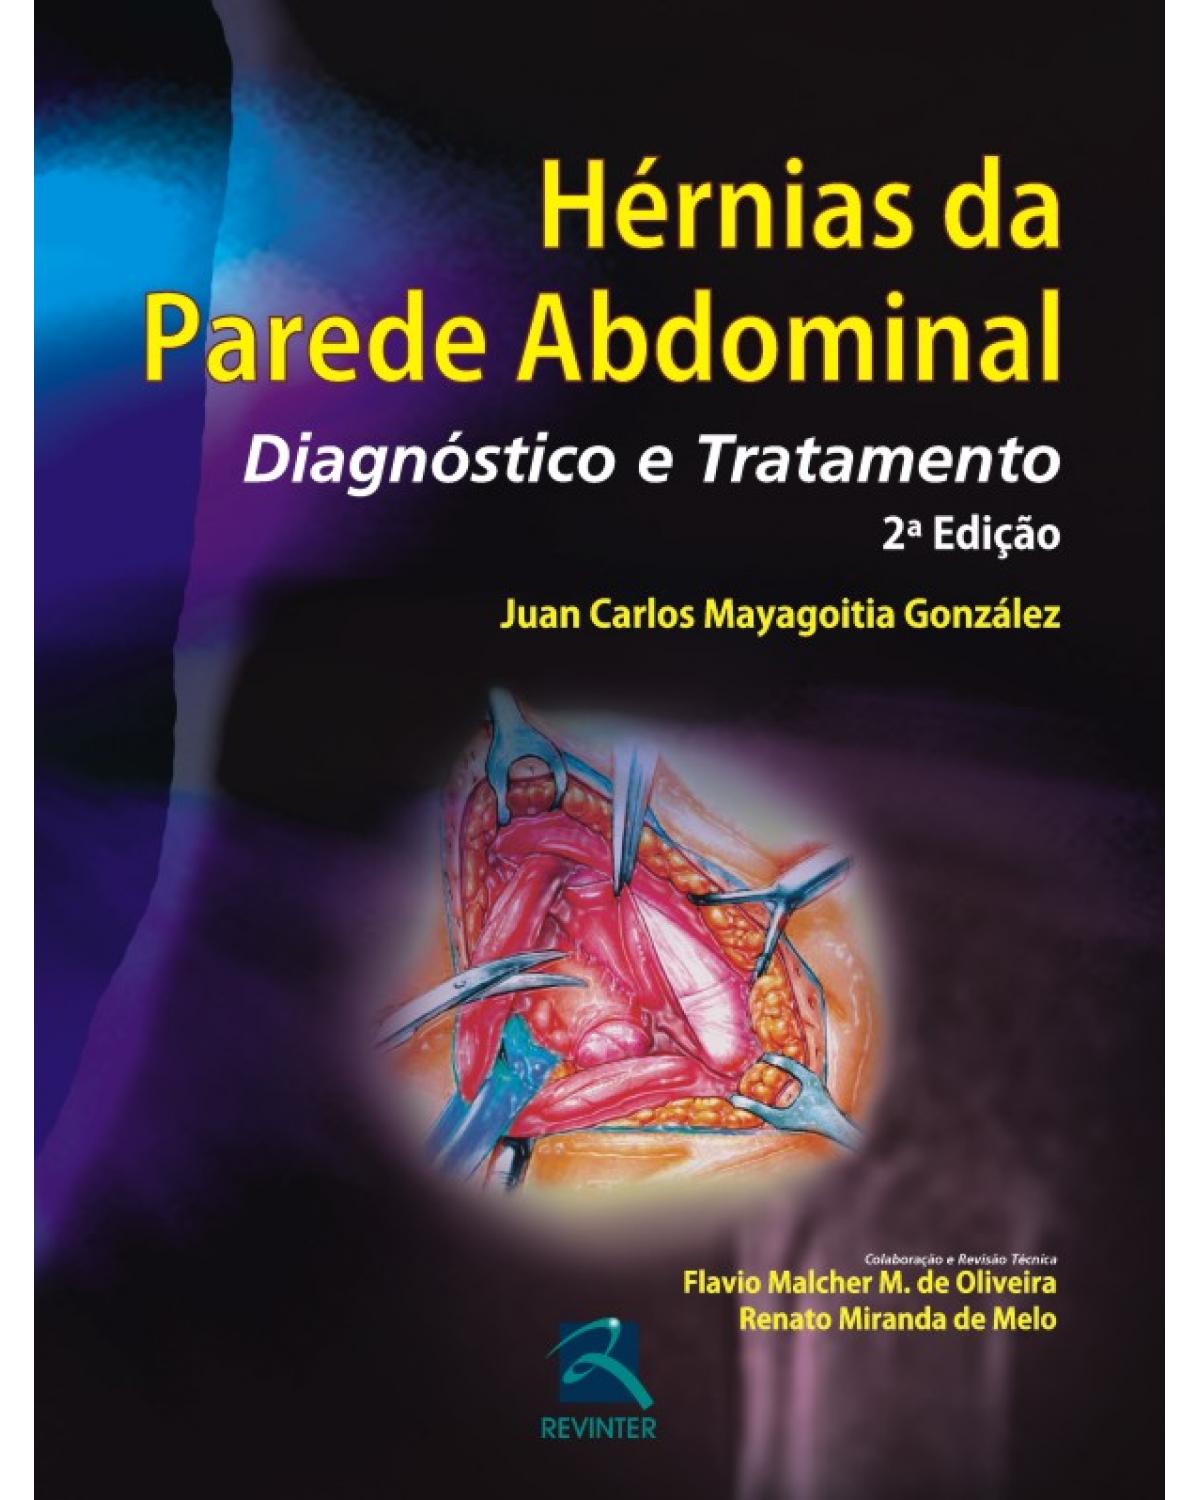 Hérnias da parede abdominal - diagnóstico e tratamento - 2ª Edição | 2011